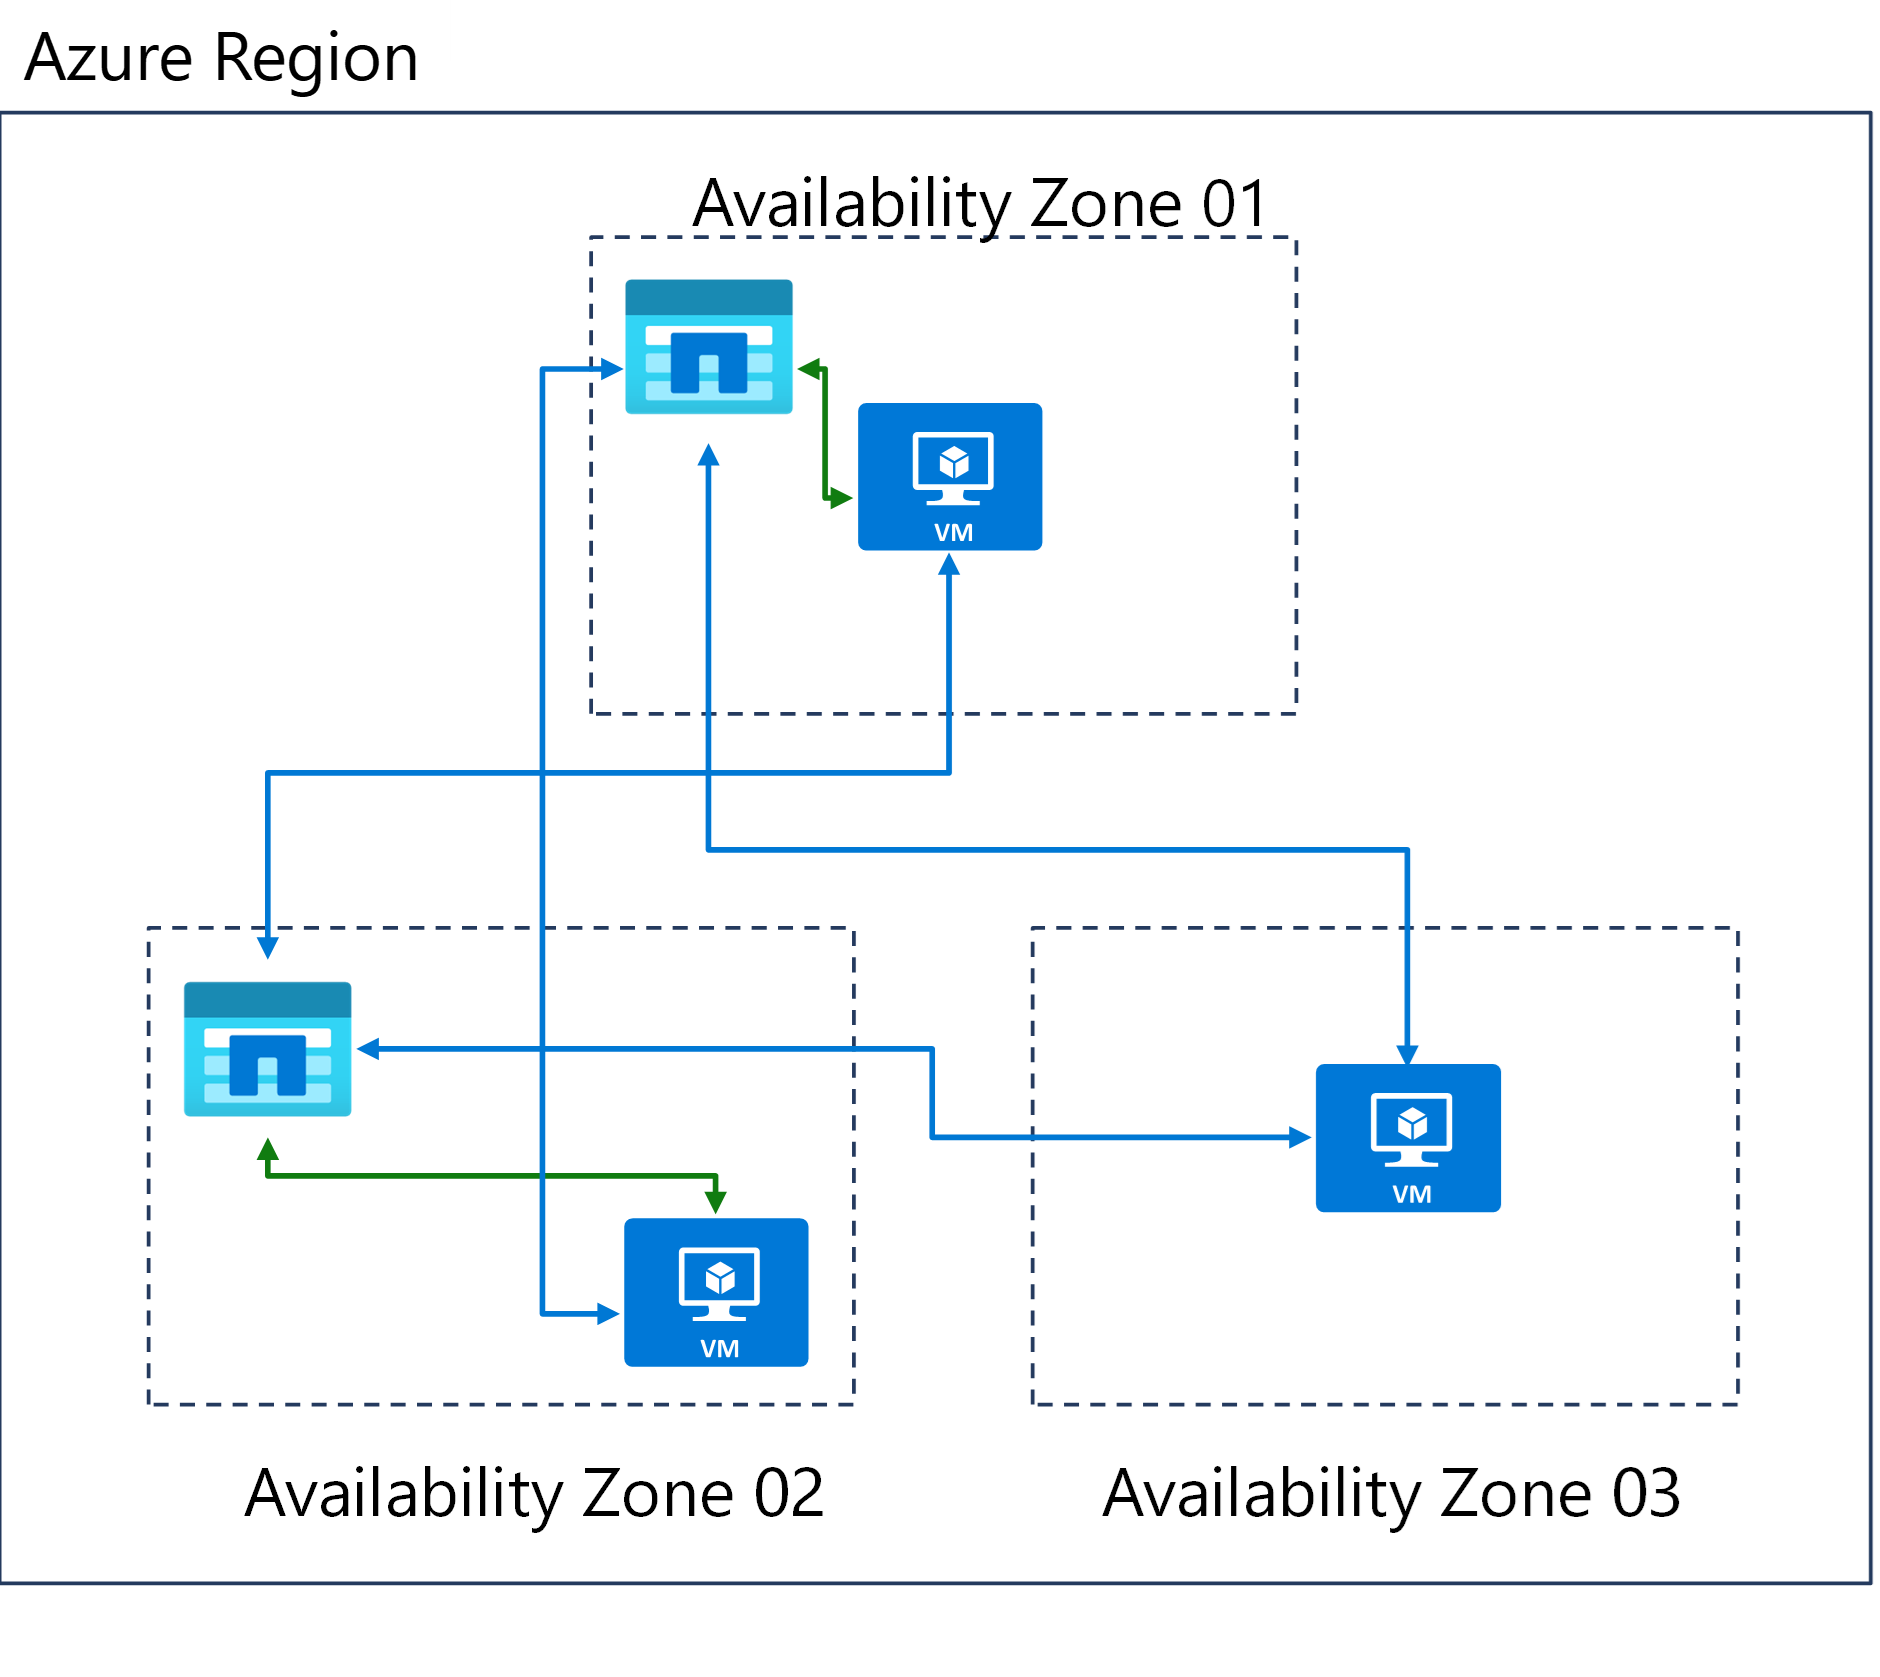 Diagrama de três zonas de disponibilidade em uma região do Azure.